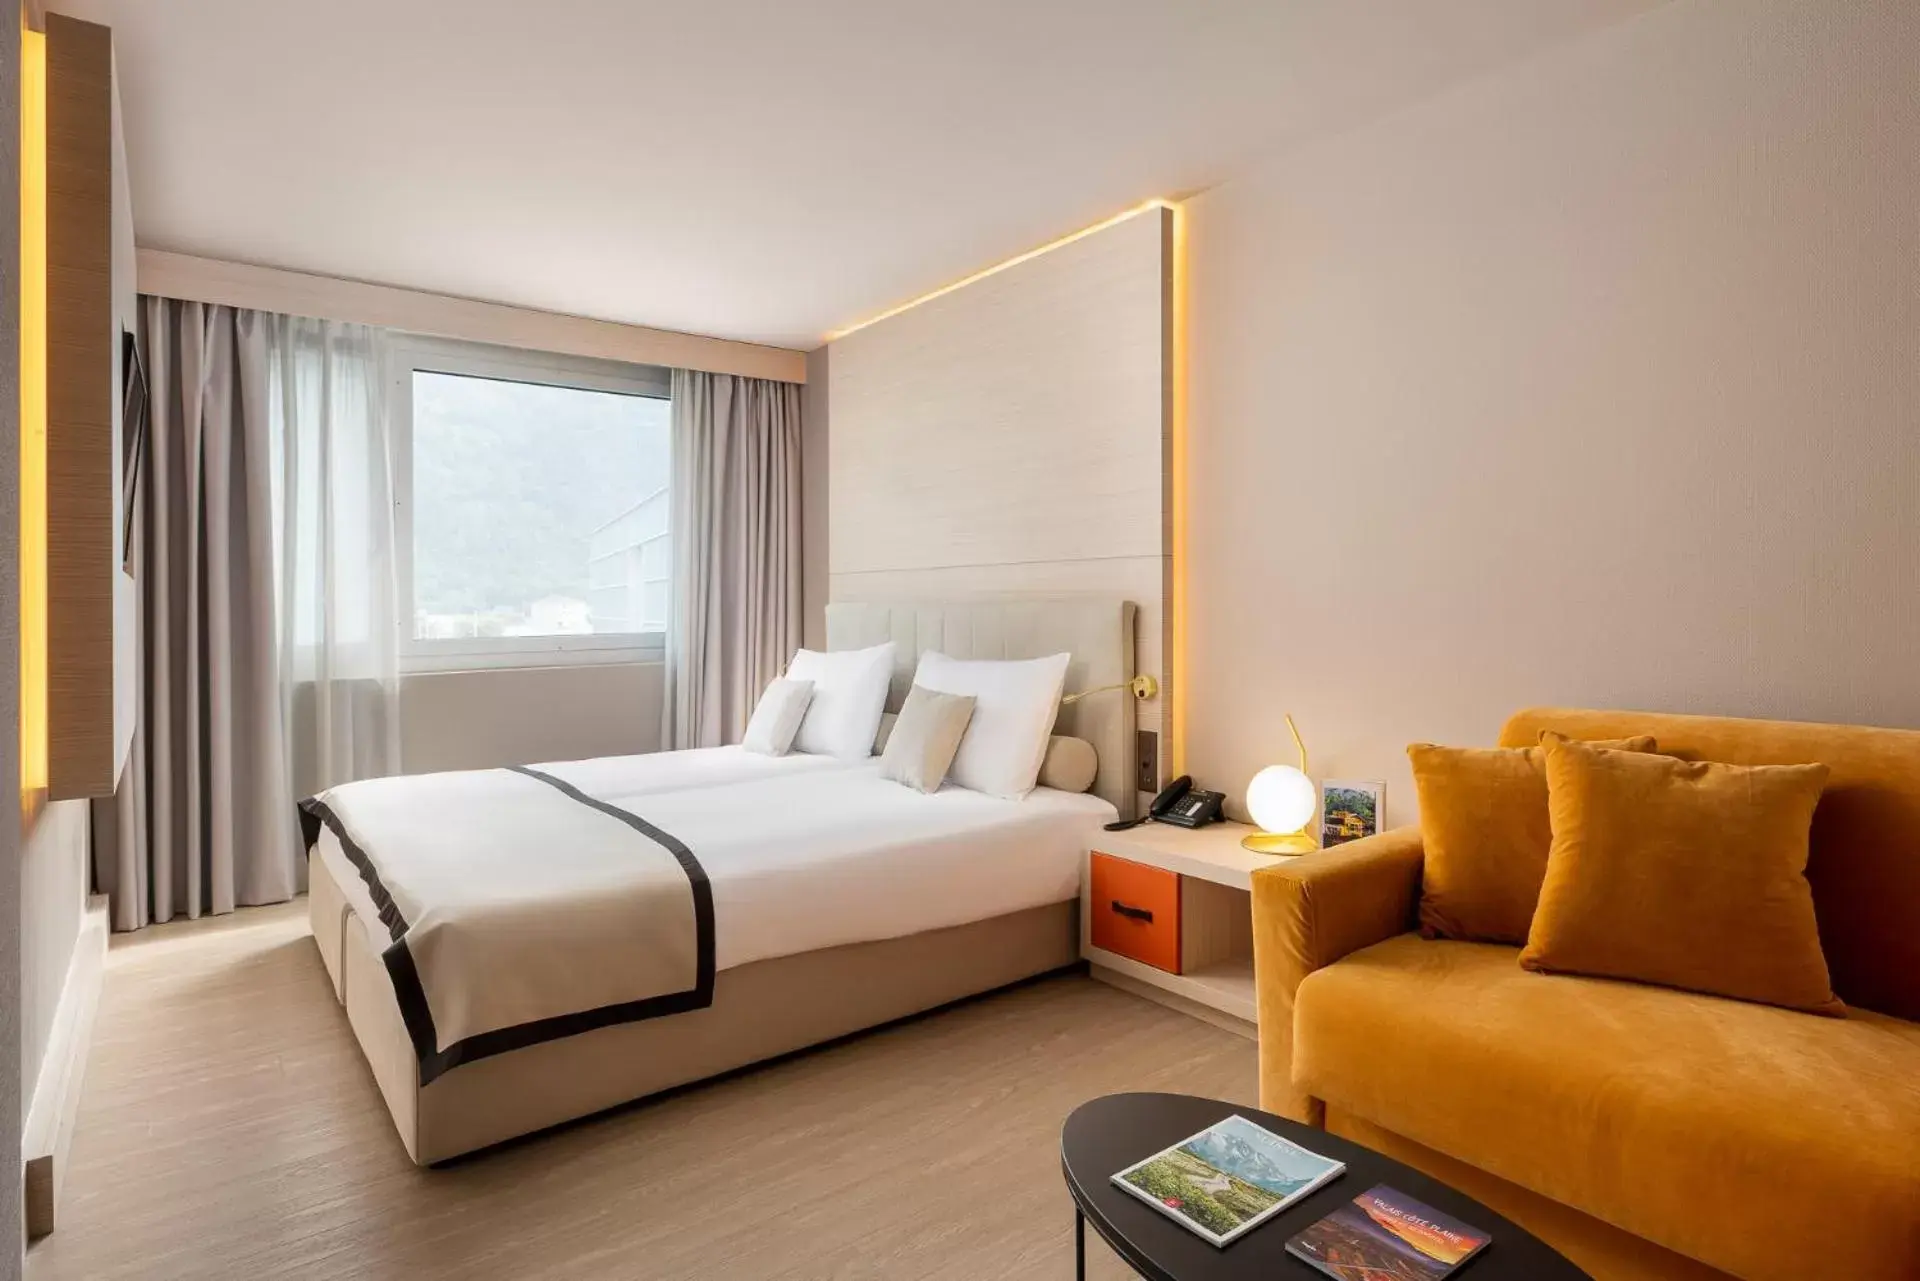 Room Photo in Hotel Vatel 4* Superior